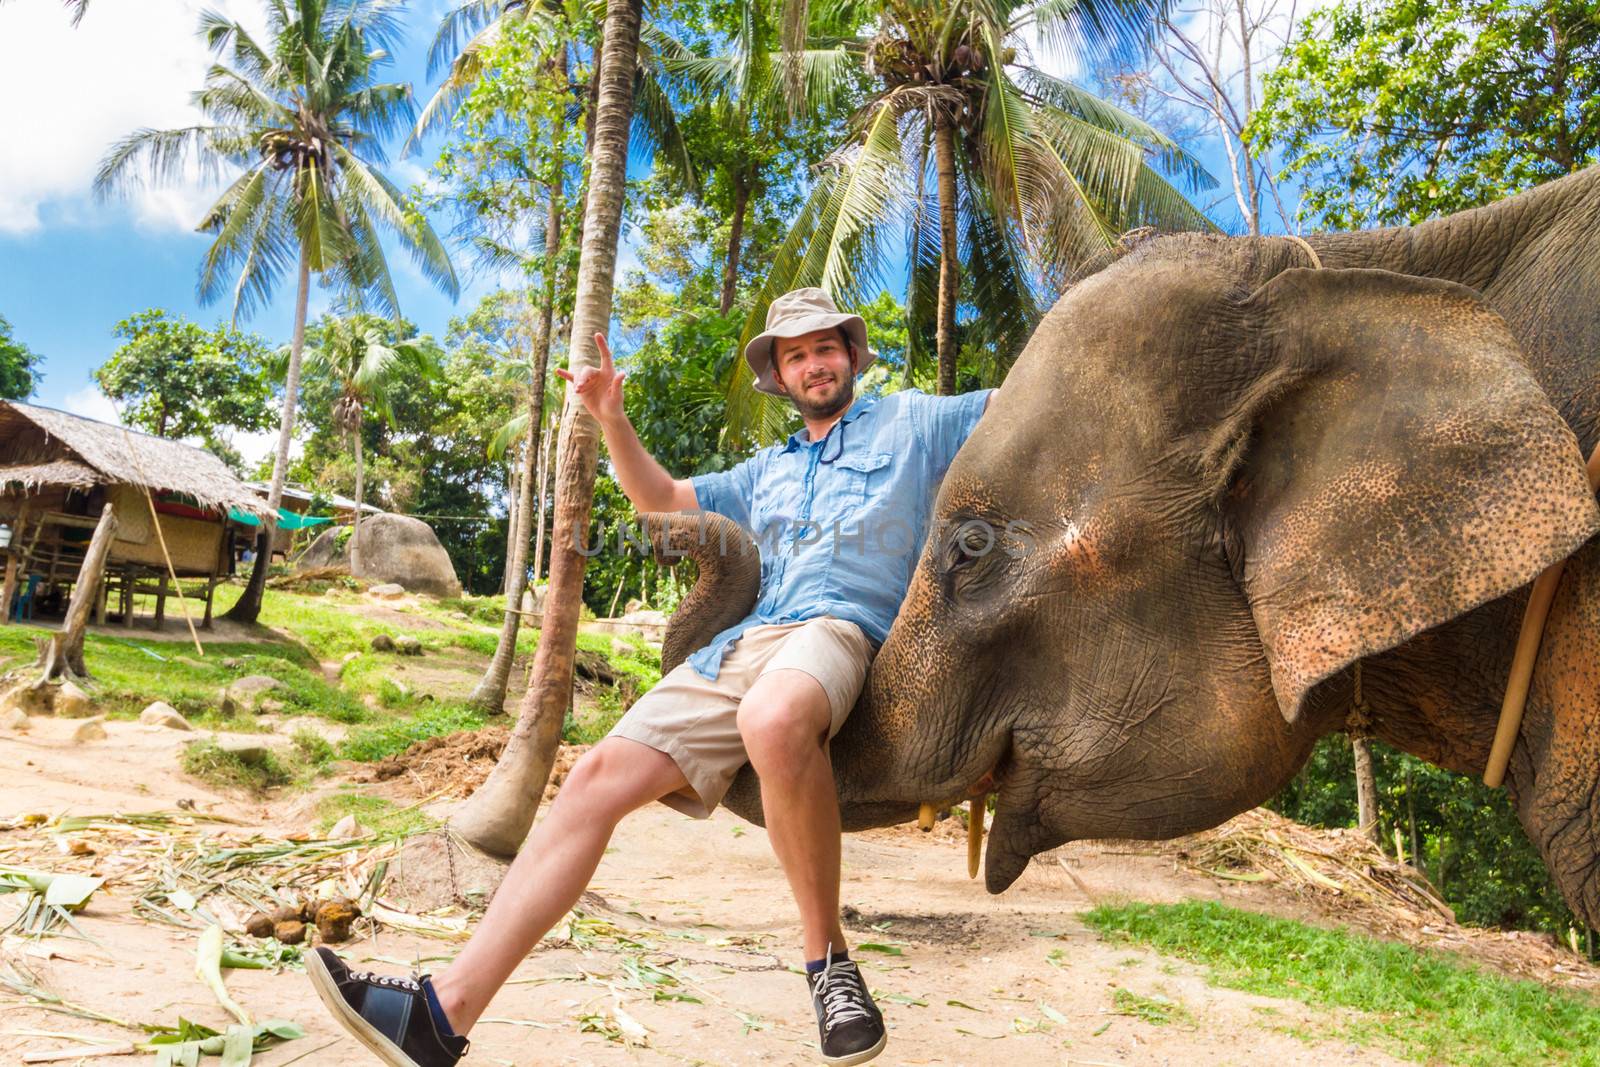 Elephan lifting a tourist. by kasto